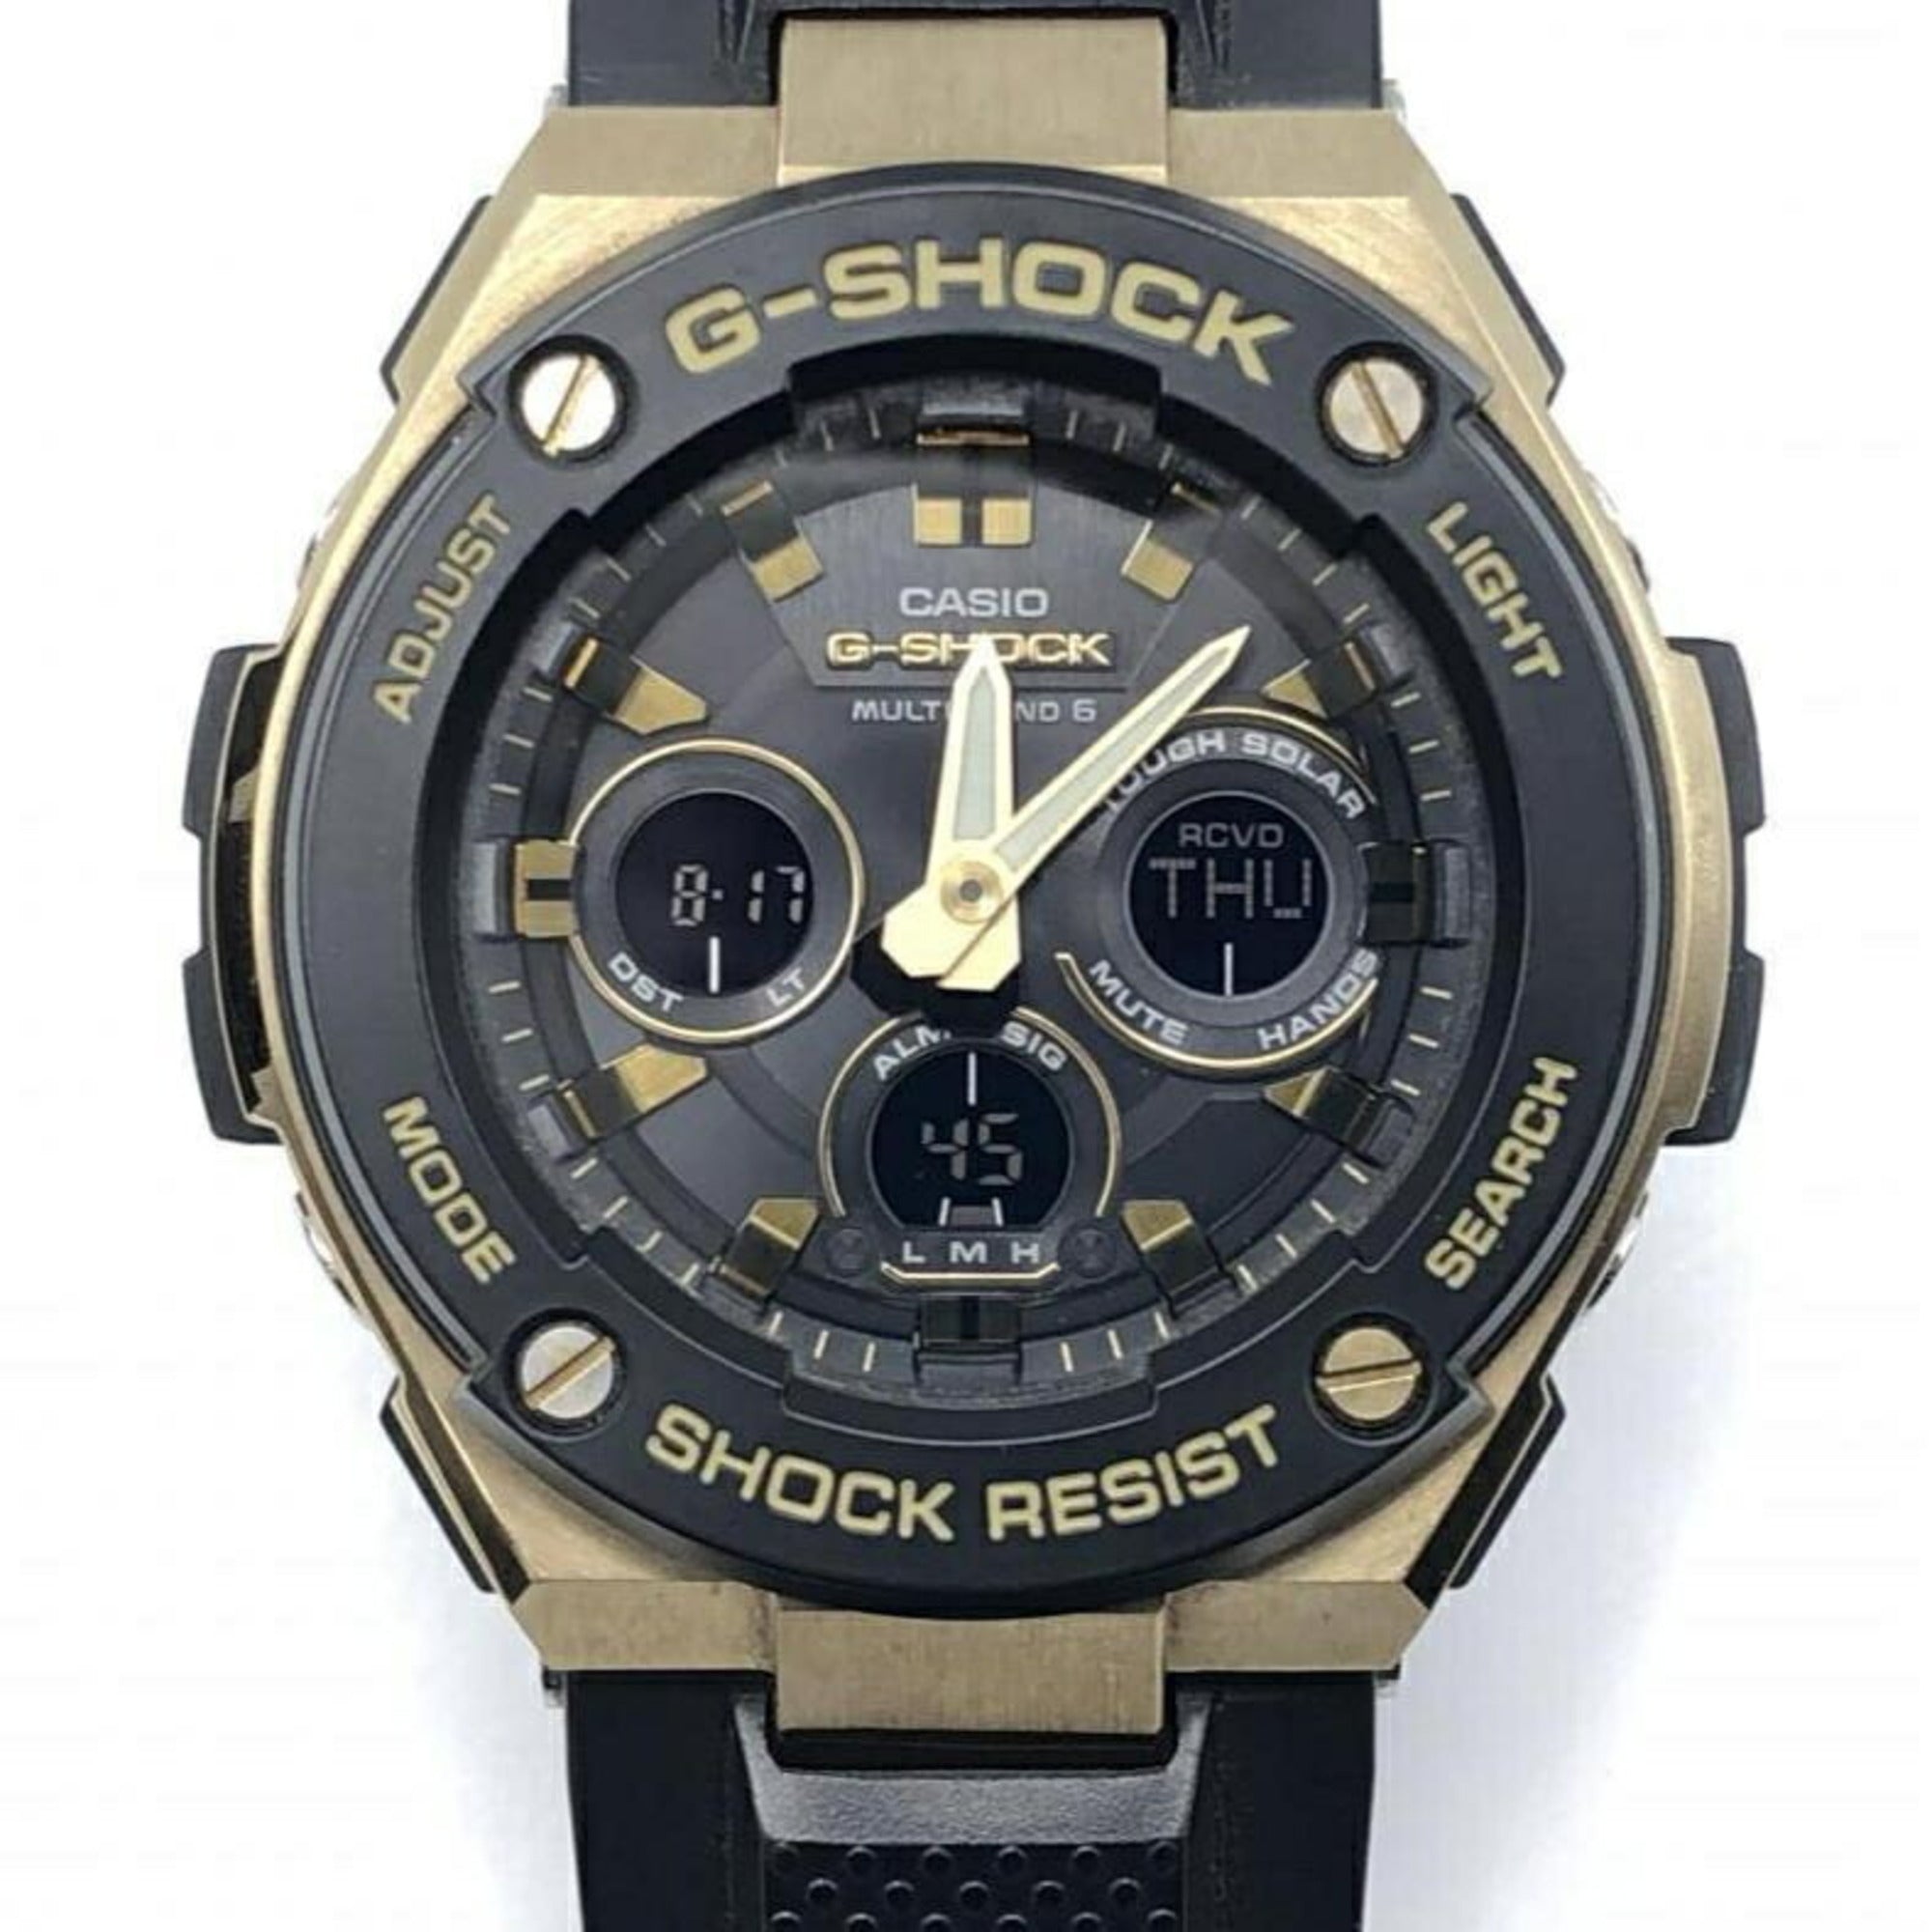 CASIO G-SHOCK watch GST-W300G black gold color G-STEEL